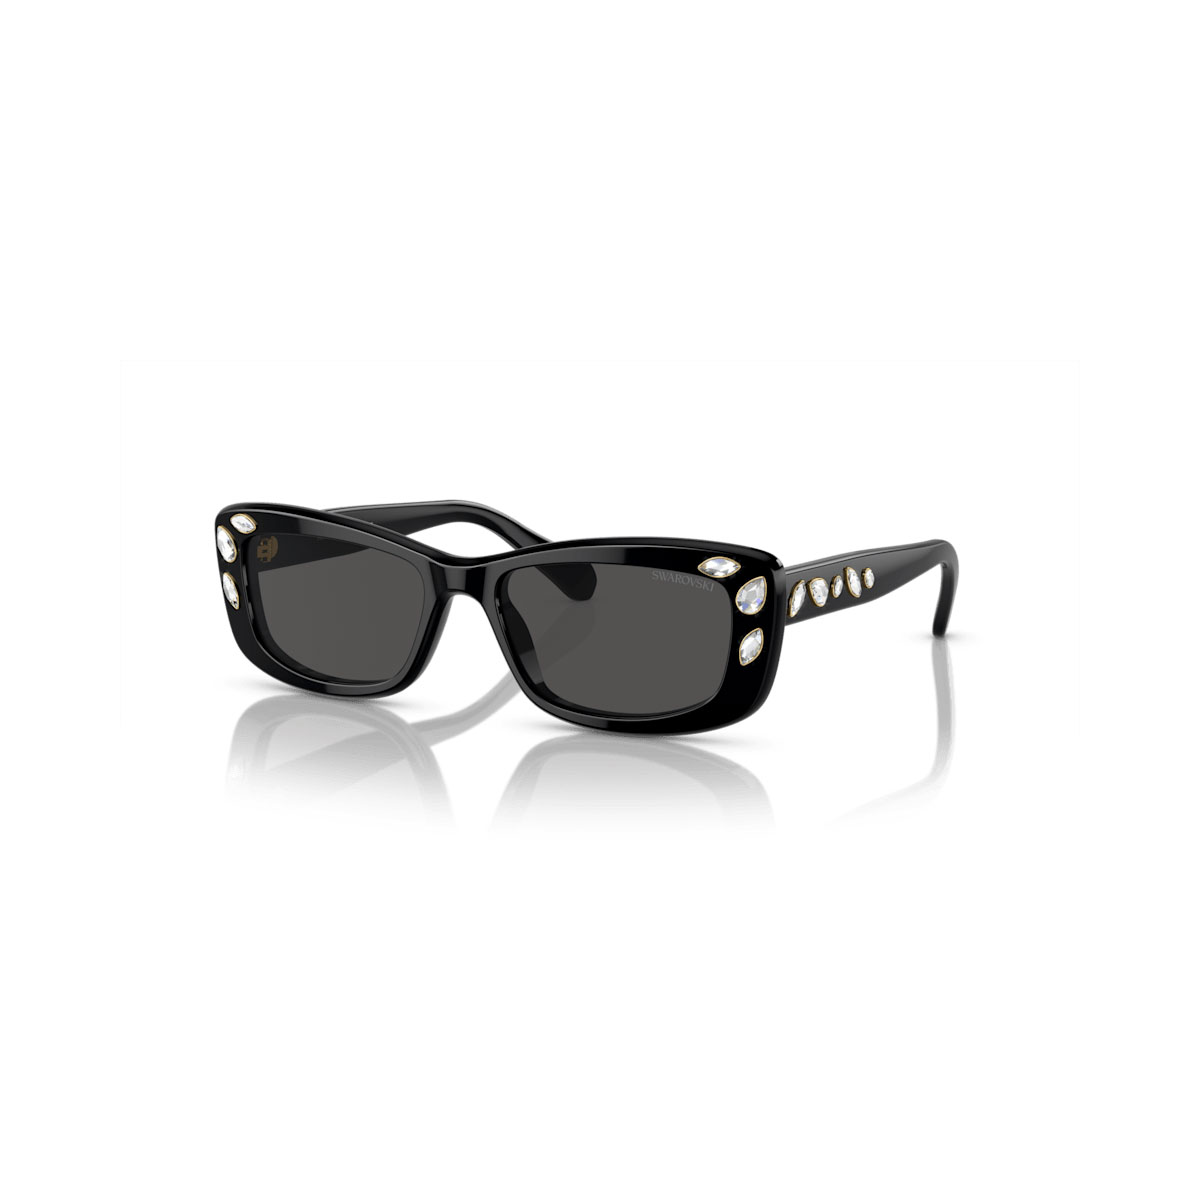 Swarovski Sunglasses, Rectangular shape, Black